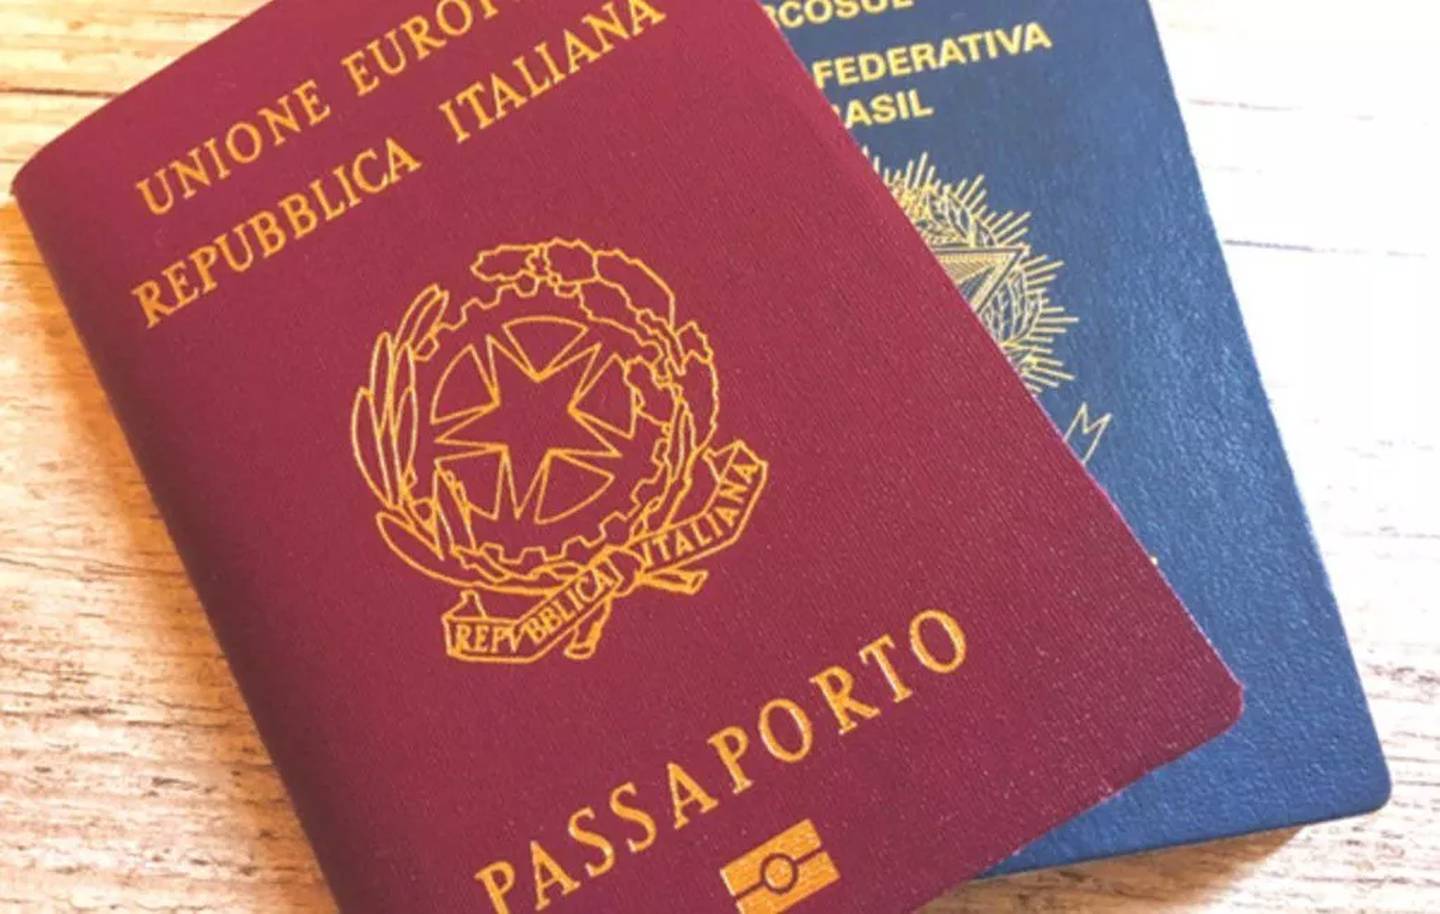 Segundo advogados especializados em imigração, as portas dos EUA estão abertas para brasileiros que possuem o passaporte italiano e a cidadania do país europeu